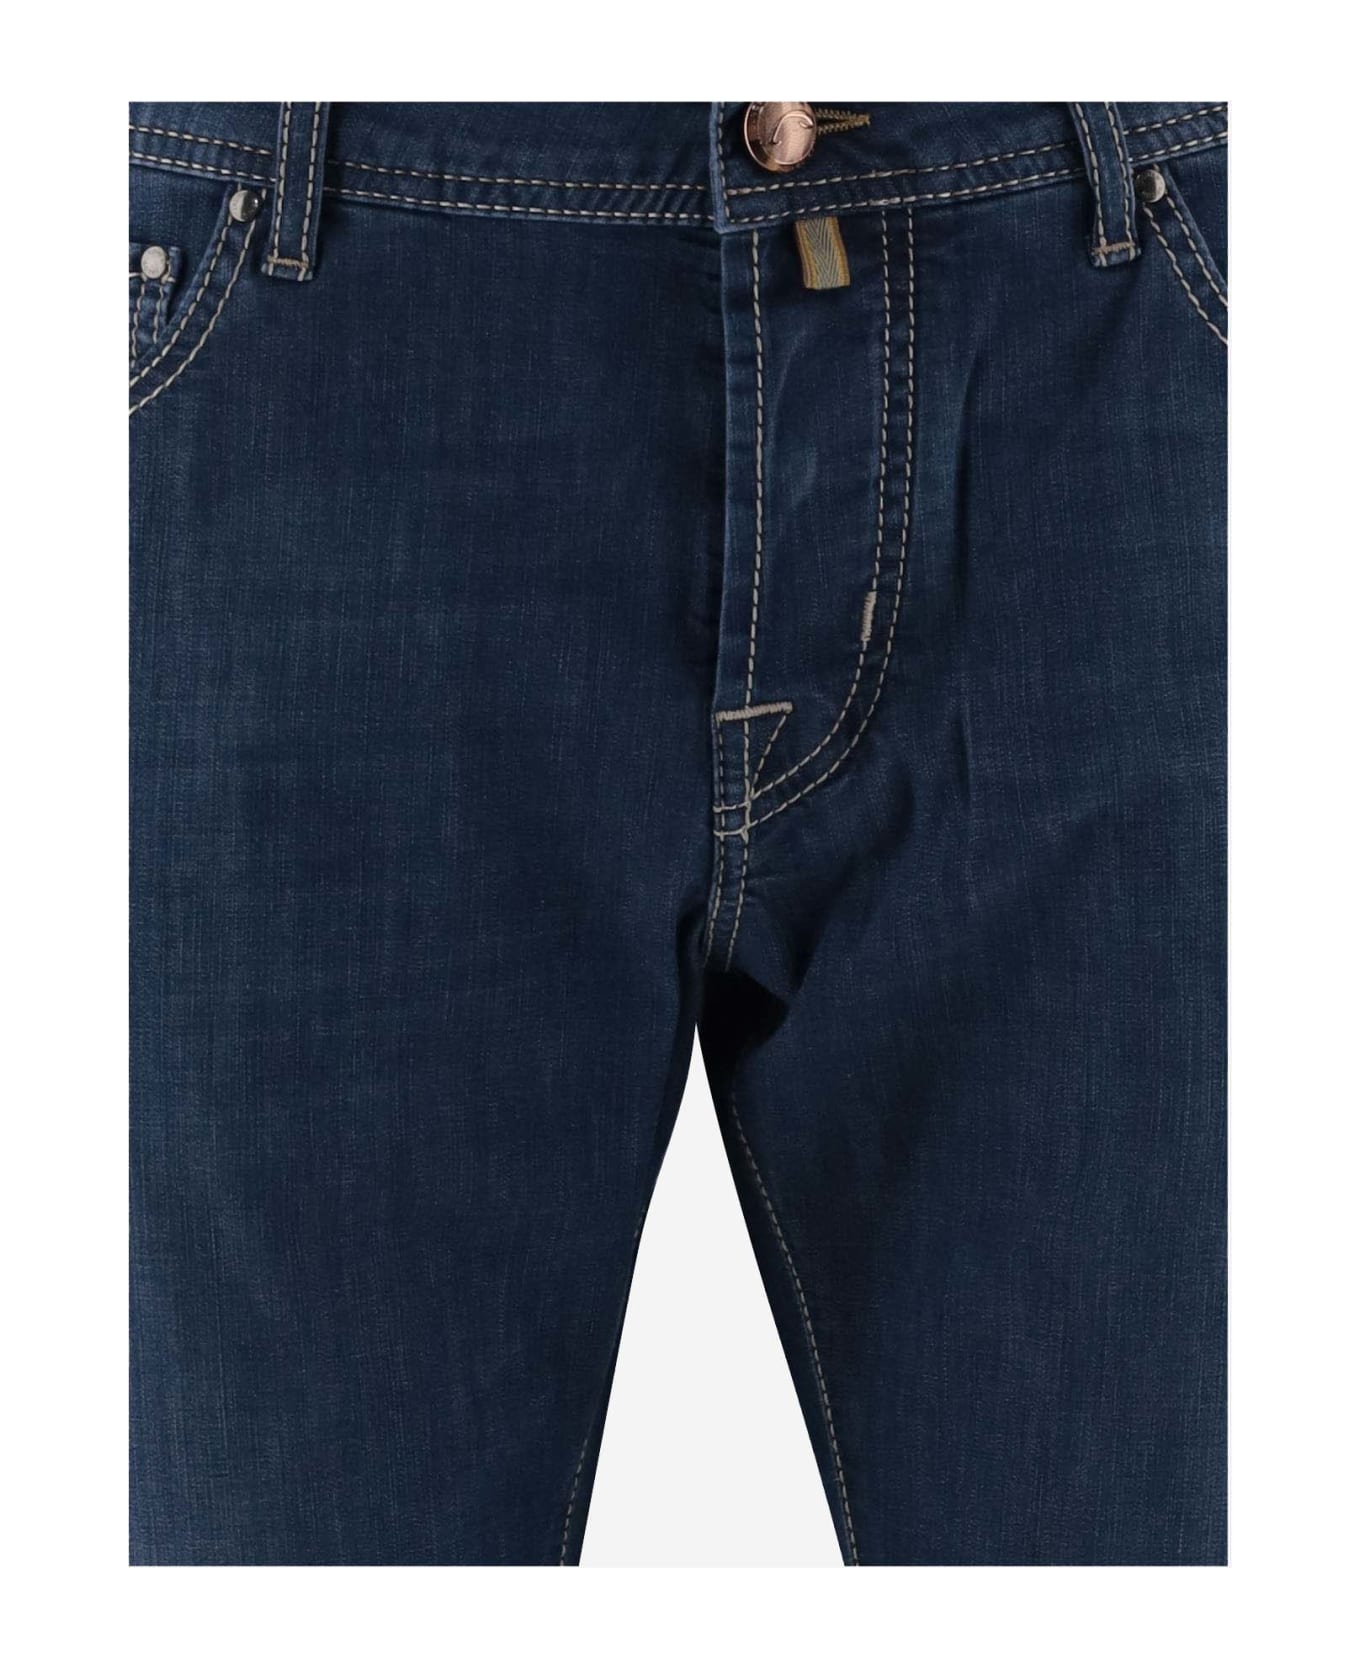 Jacob Cohen Cotton Blend Denim Jeans Jeans - DENIM MEDIO